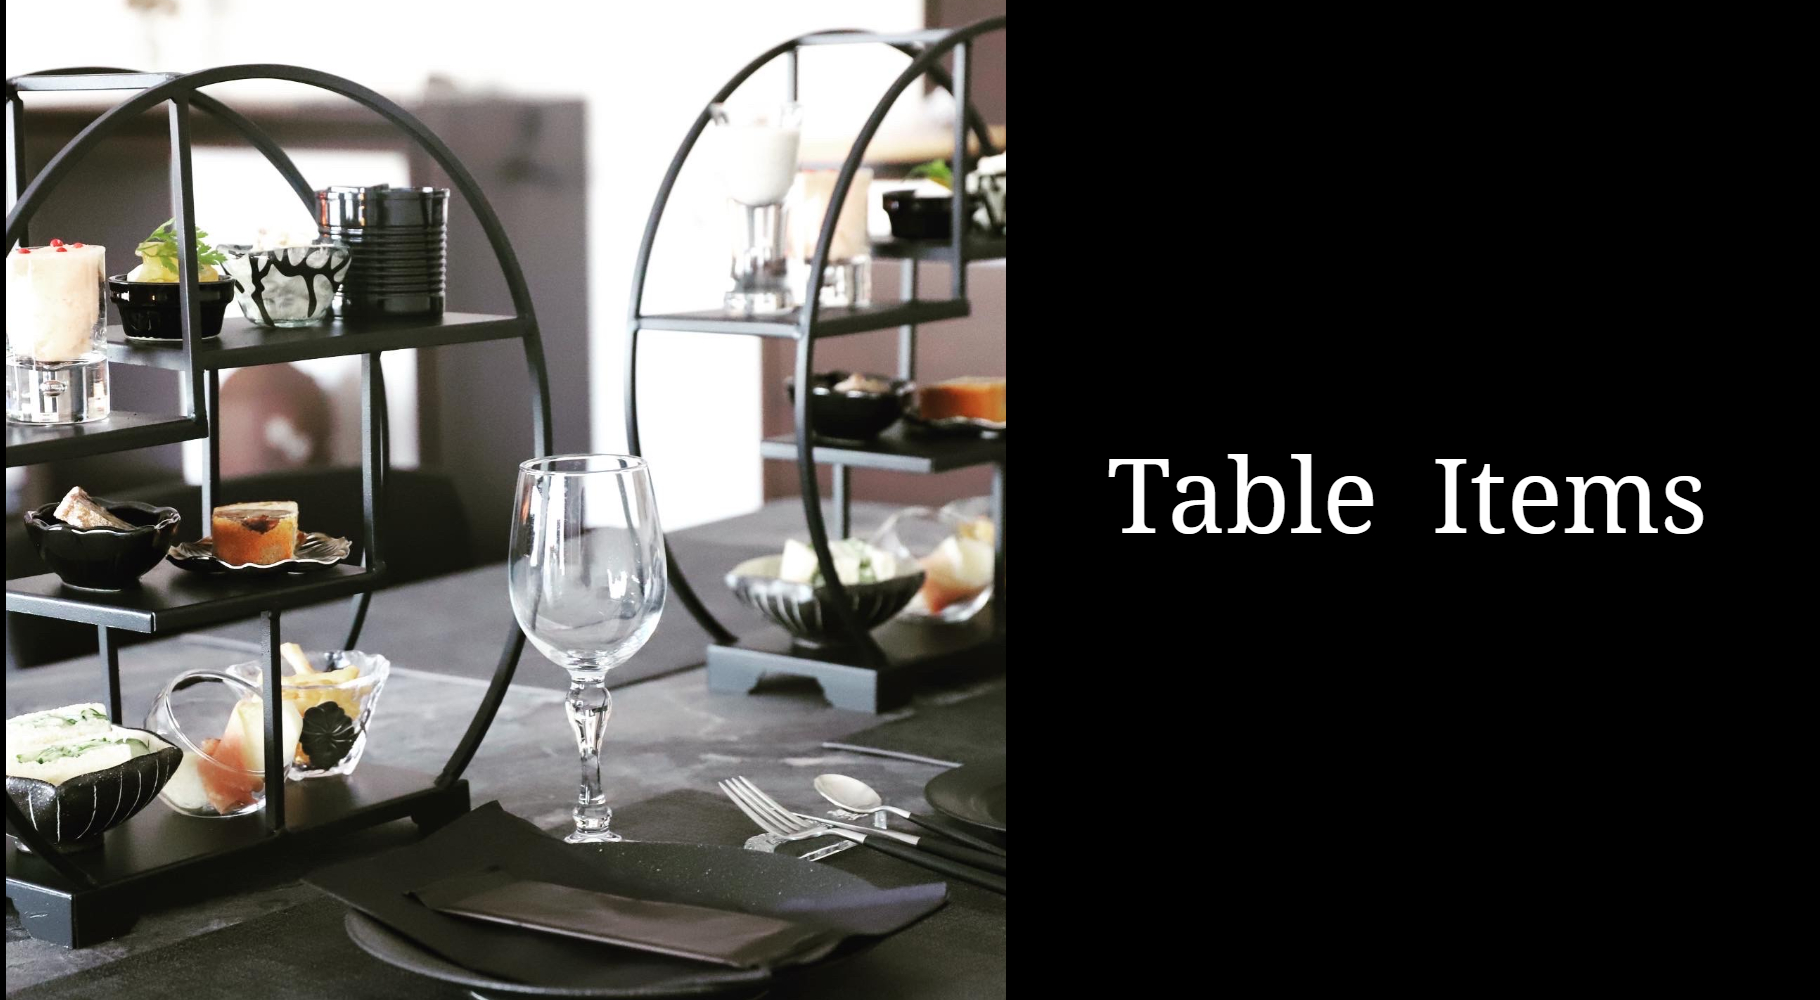 テーブルクロスやテーブルナプキン・ランチョンマットなどM苦楽園セレクトのおしゃれなテーブルアイテム